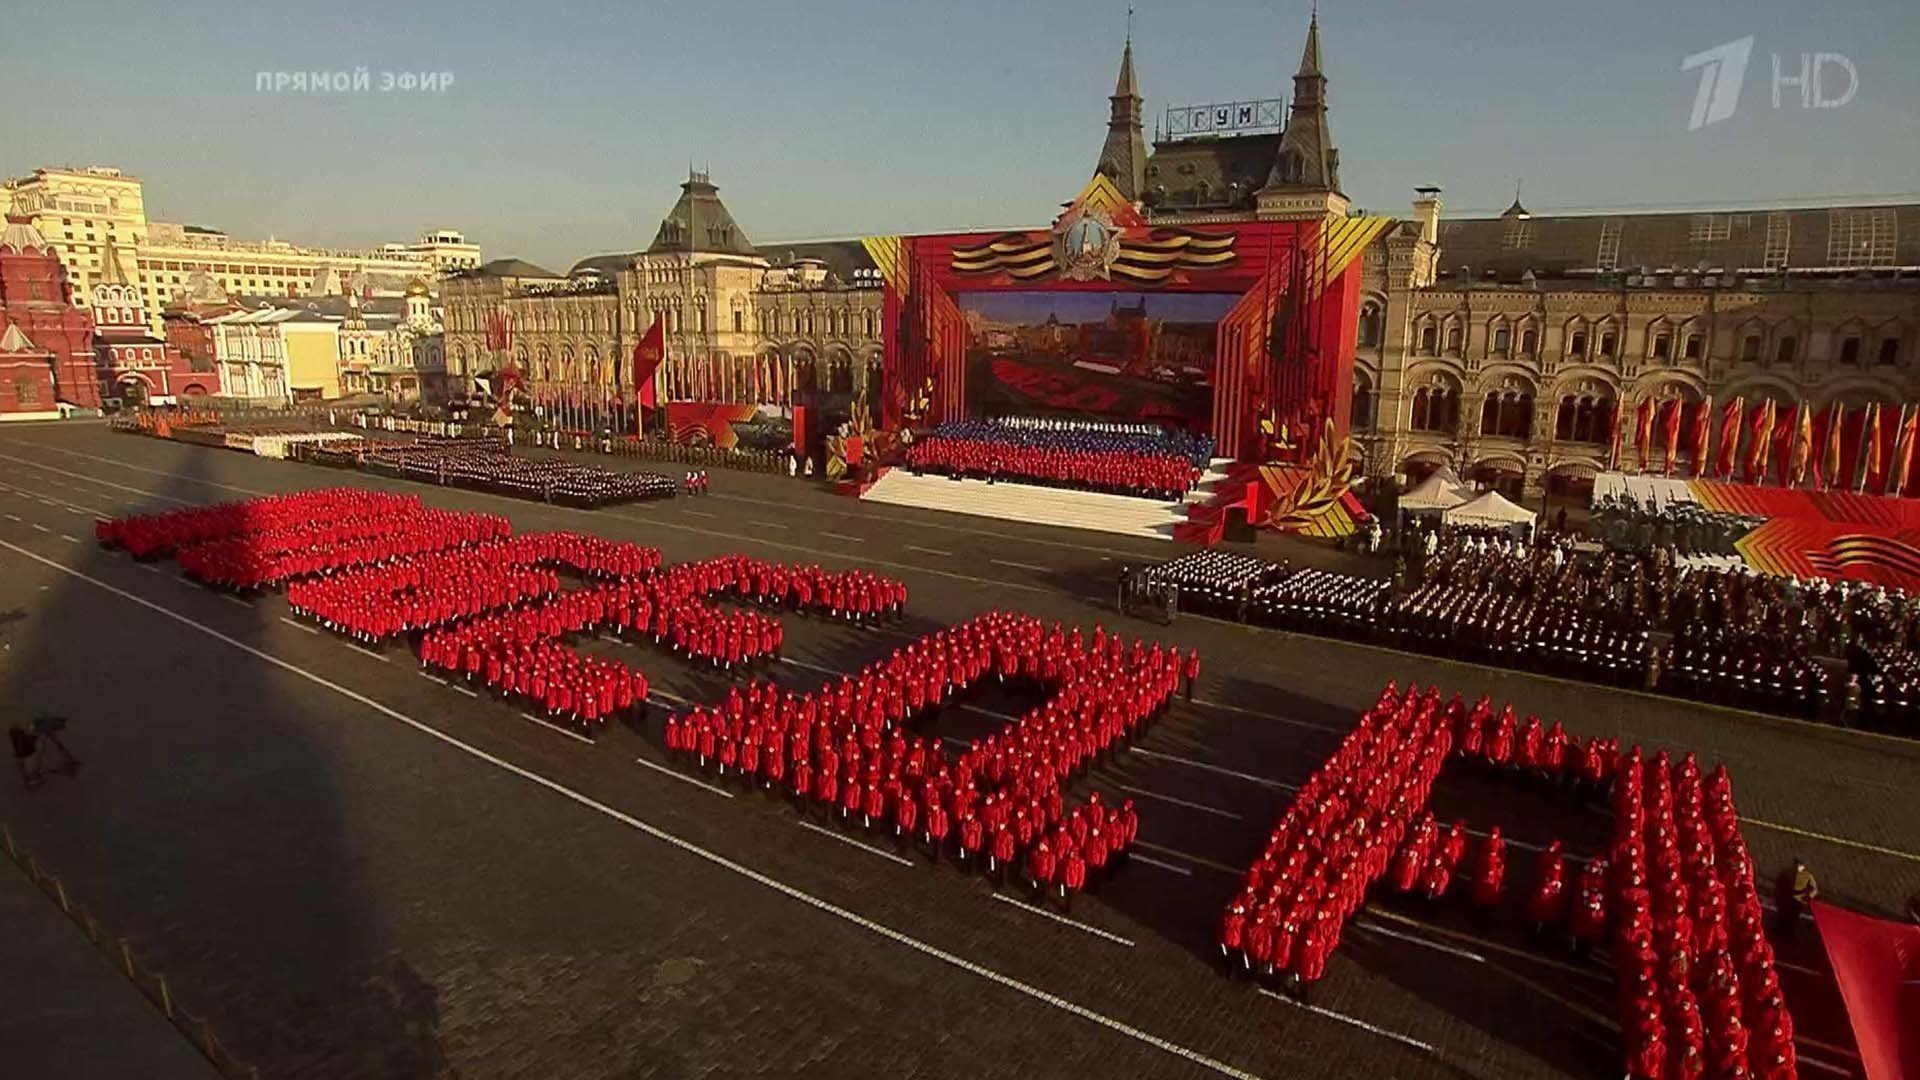 9 мая 2015 год. Парад Победы 2015 года на красной площади в Москве. Парад на красной площади 9 мая 2015 года. Парад на красной площади в Москве 2022. Парад Победы на красной площади.